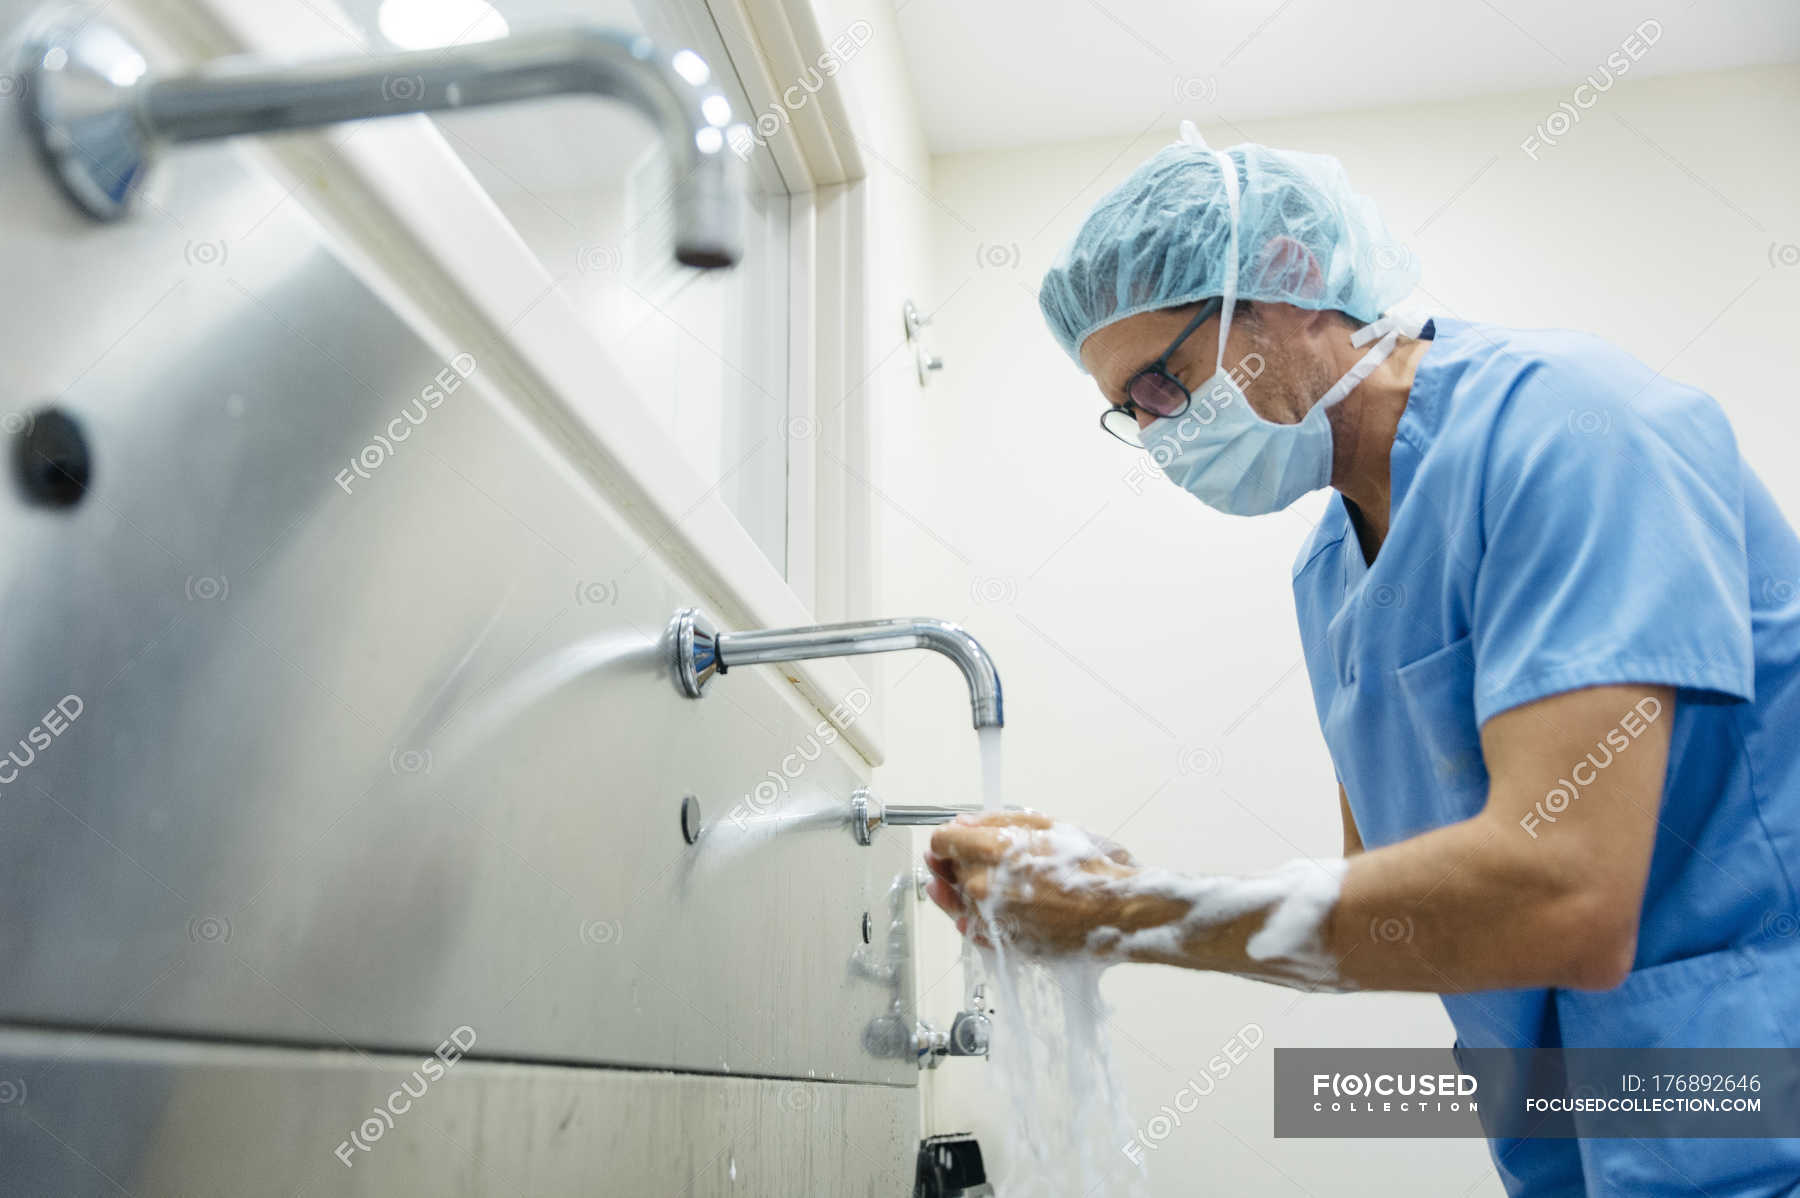 Подготовка рук к операции. Мытье рук хирурга перед операцией. Подготовка рук хирурга к операции. Хирургическая мойка рук. Хирург обрабатывает руки.